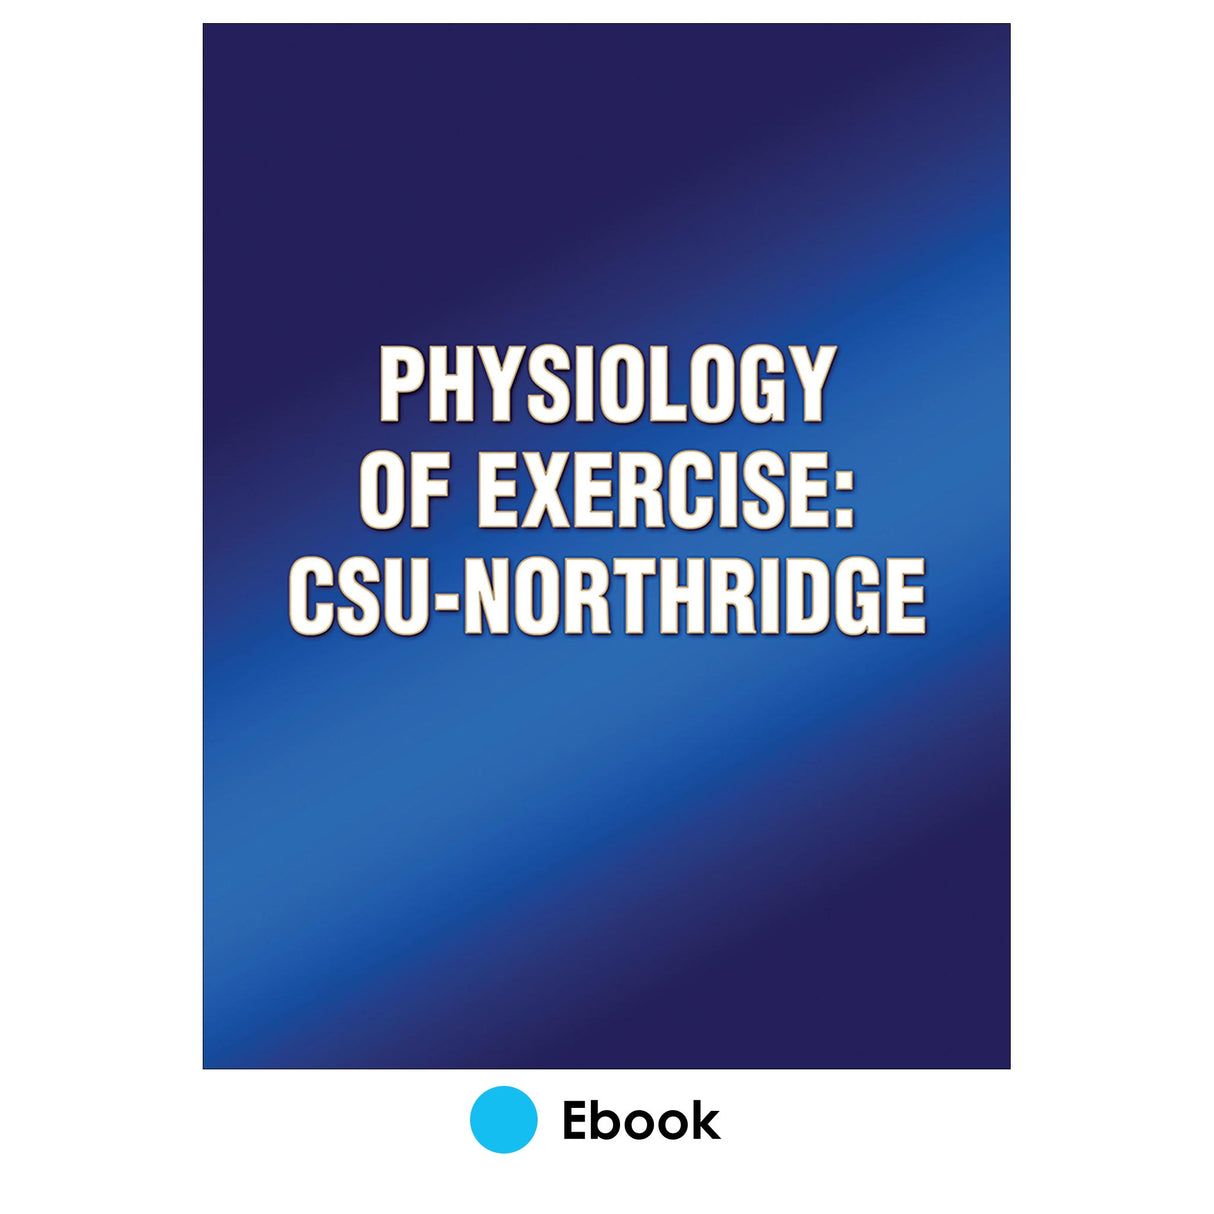 Physiology of Exercise: CSU-Northridge